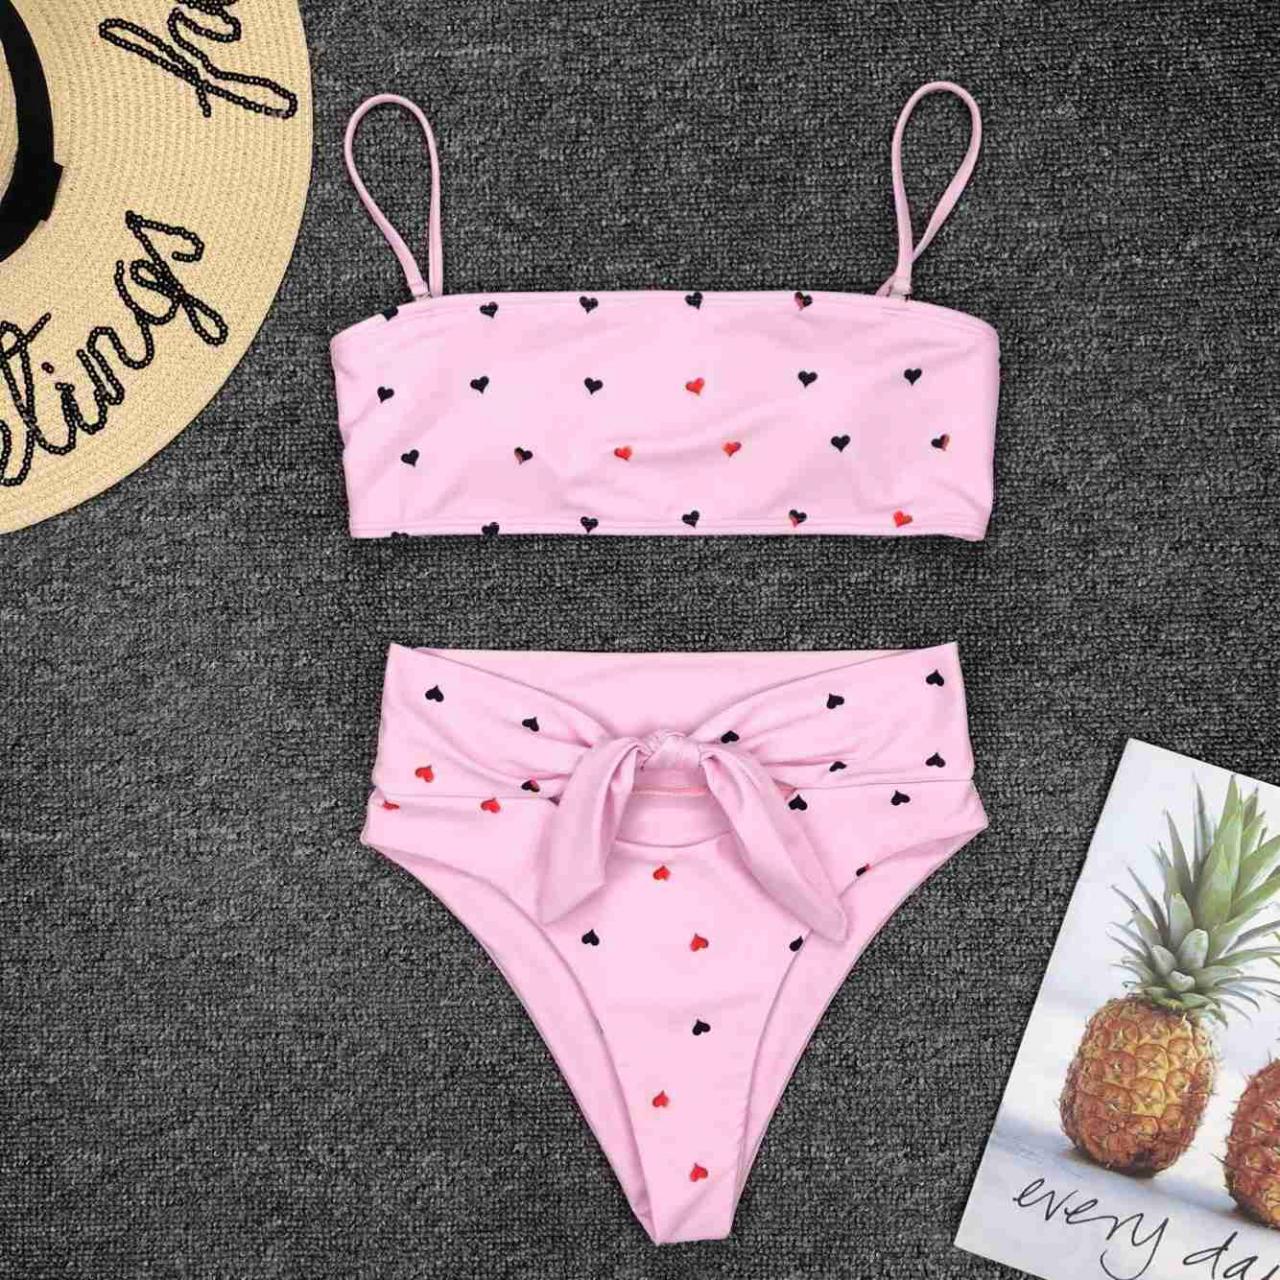 Mini Bikini 2021 Swimwear Women Push Up Bikini Set Padded Bra Sexy Swimsuit Bandage Swim Suit Brazilian Biquini, Two Pieces Swimwear ,pink